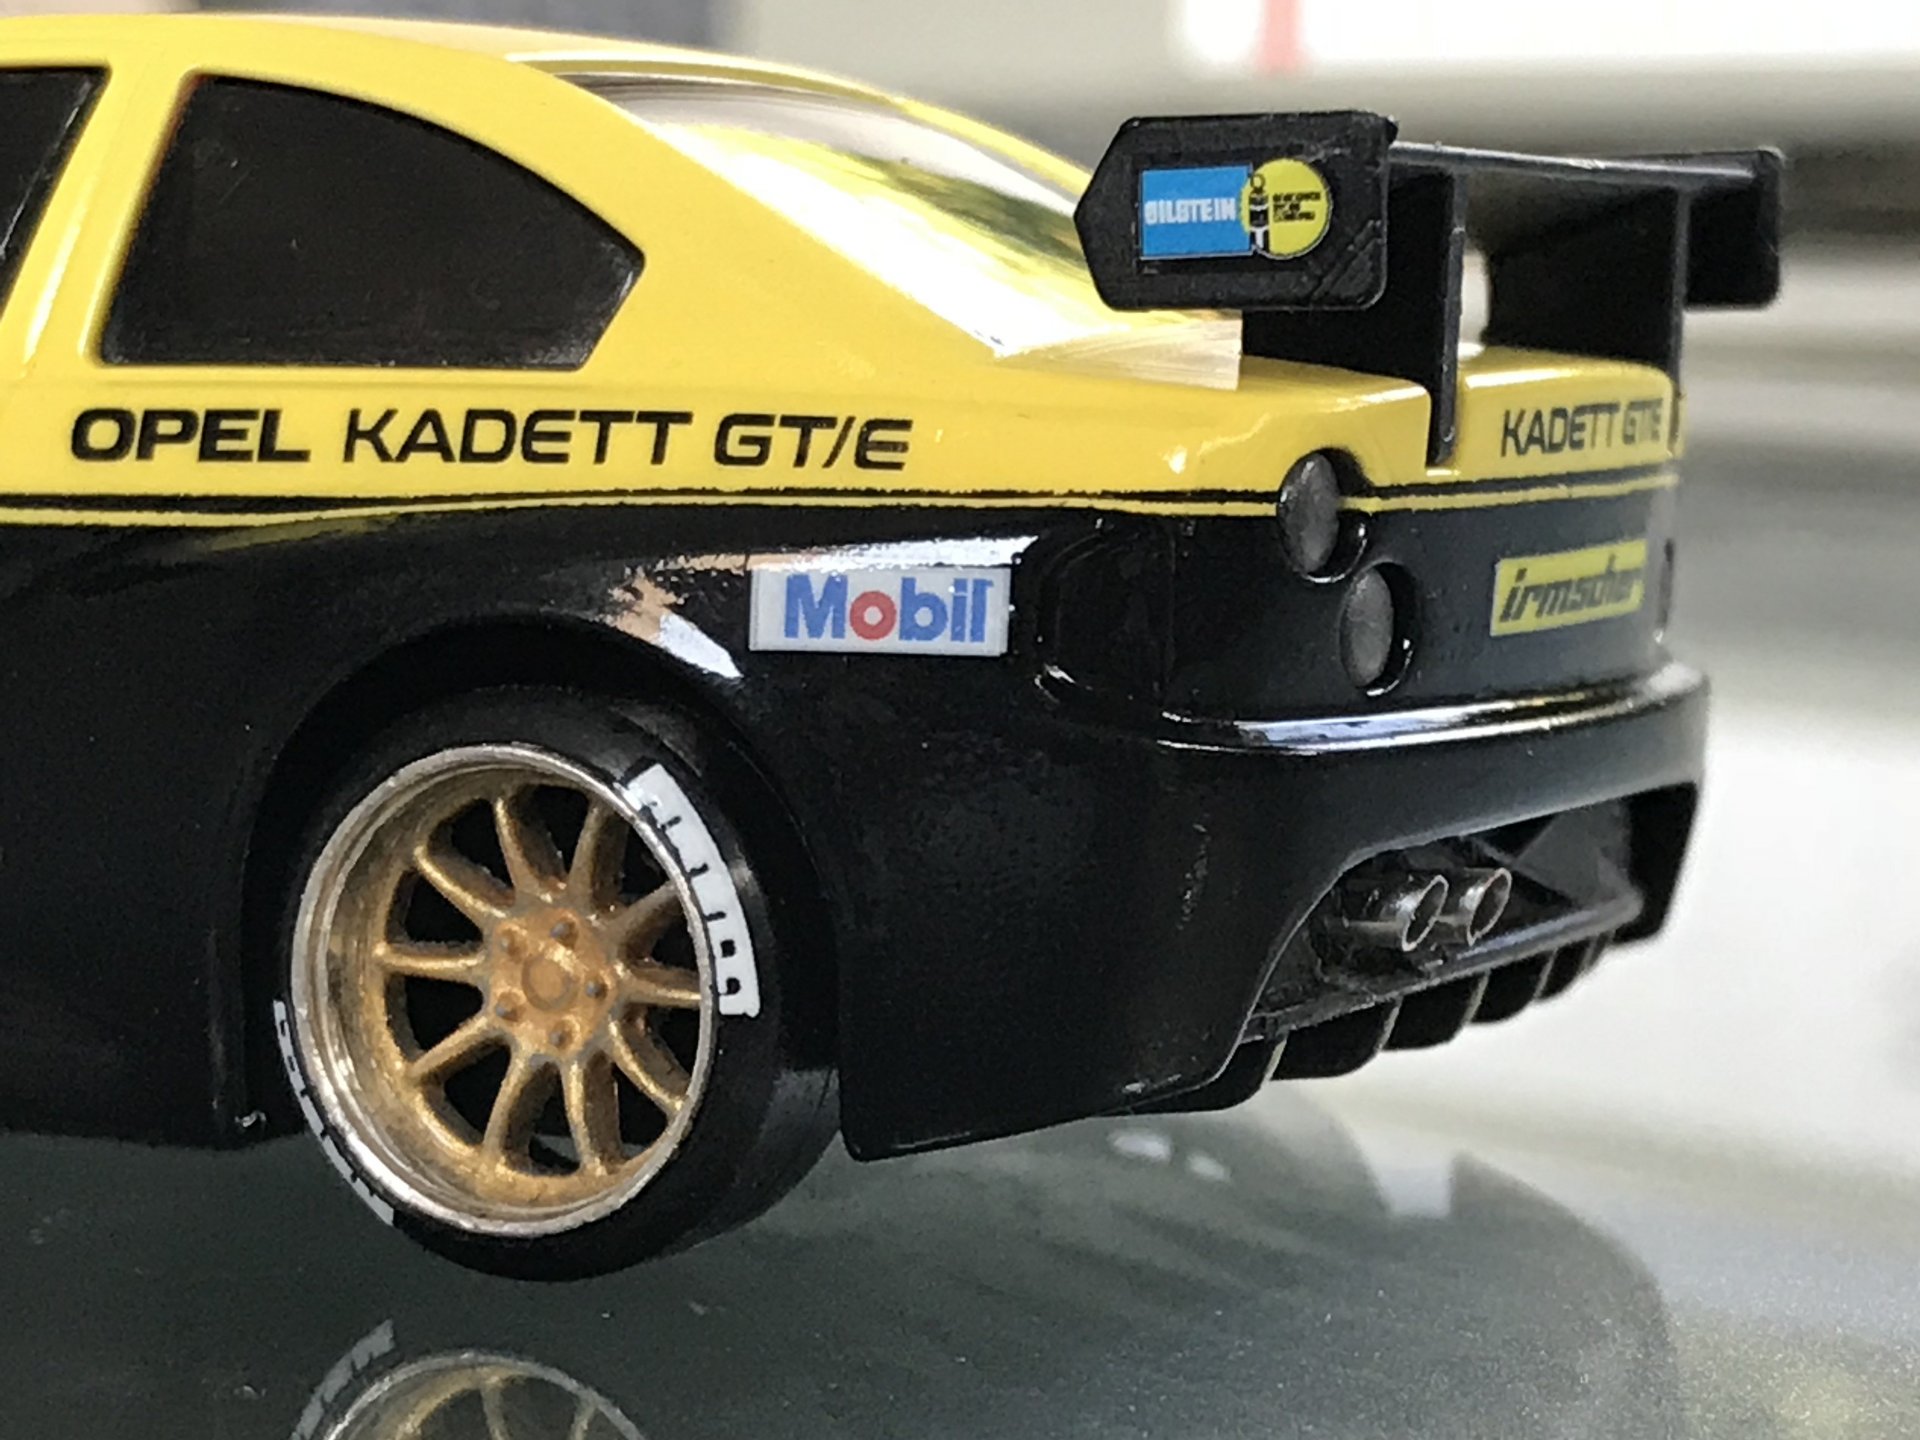 Kadett GT/E